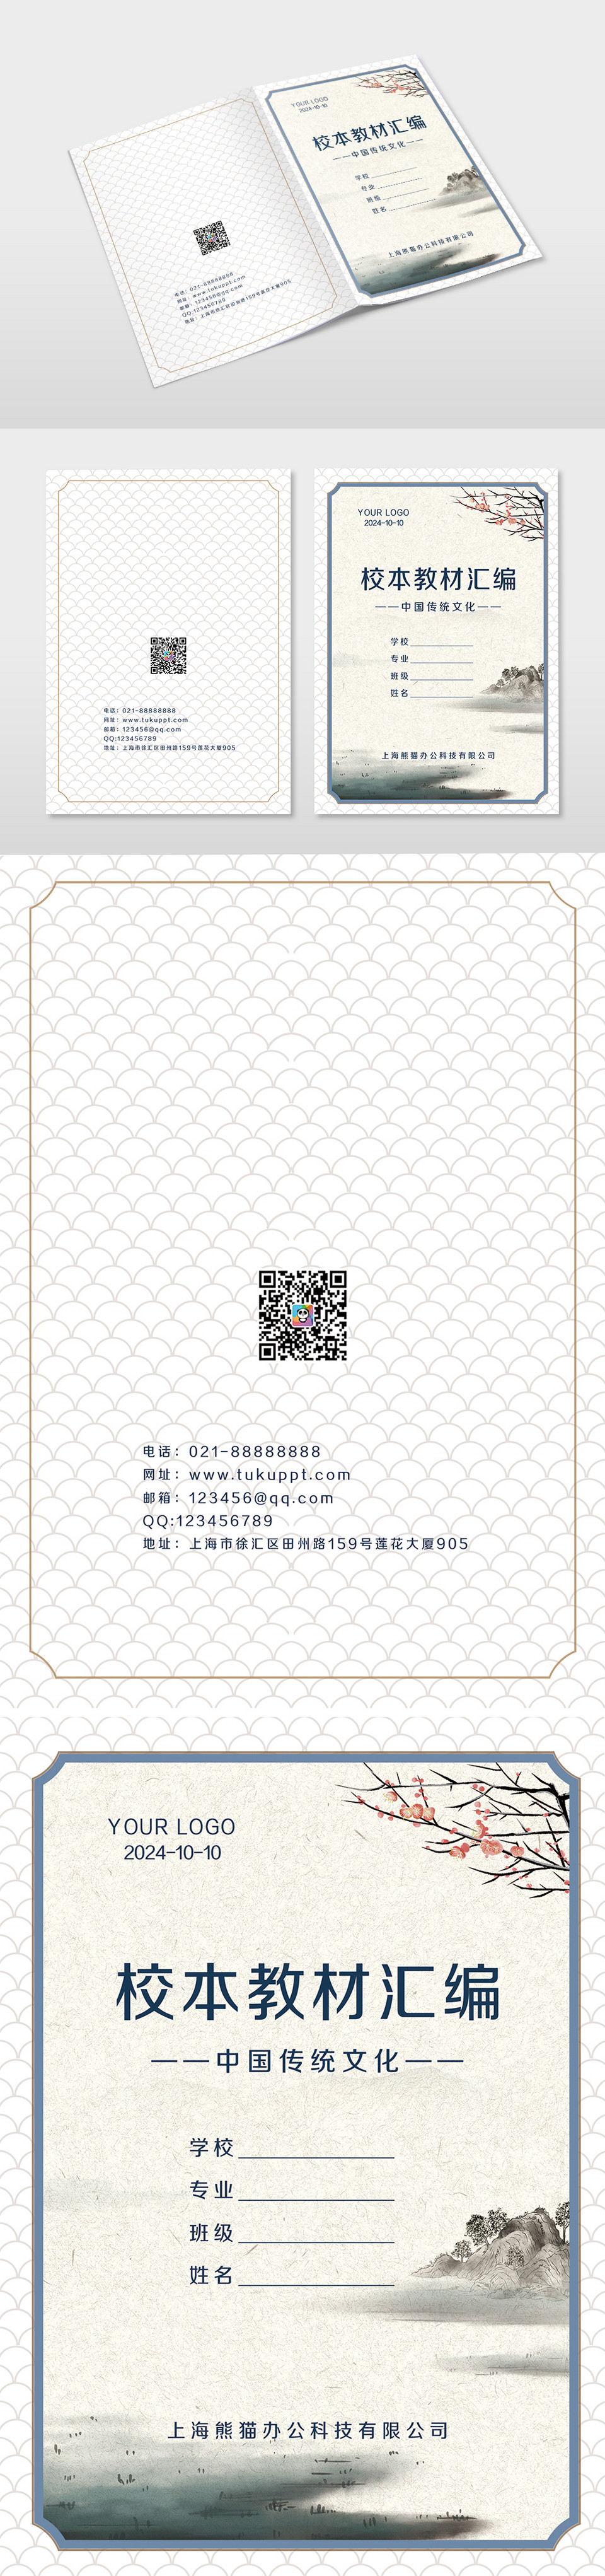 中国风传统文化样本教材汇编画册封面